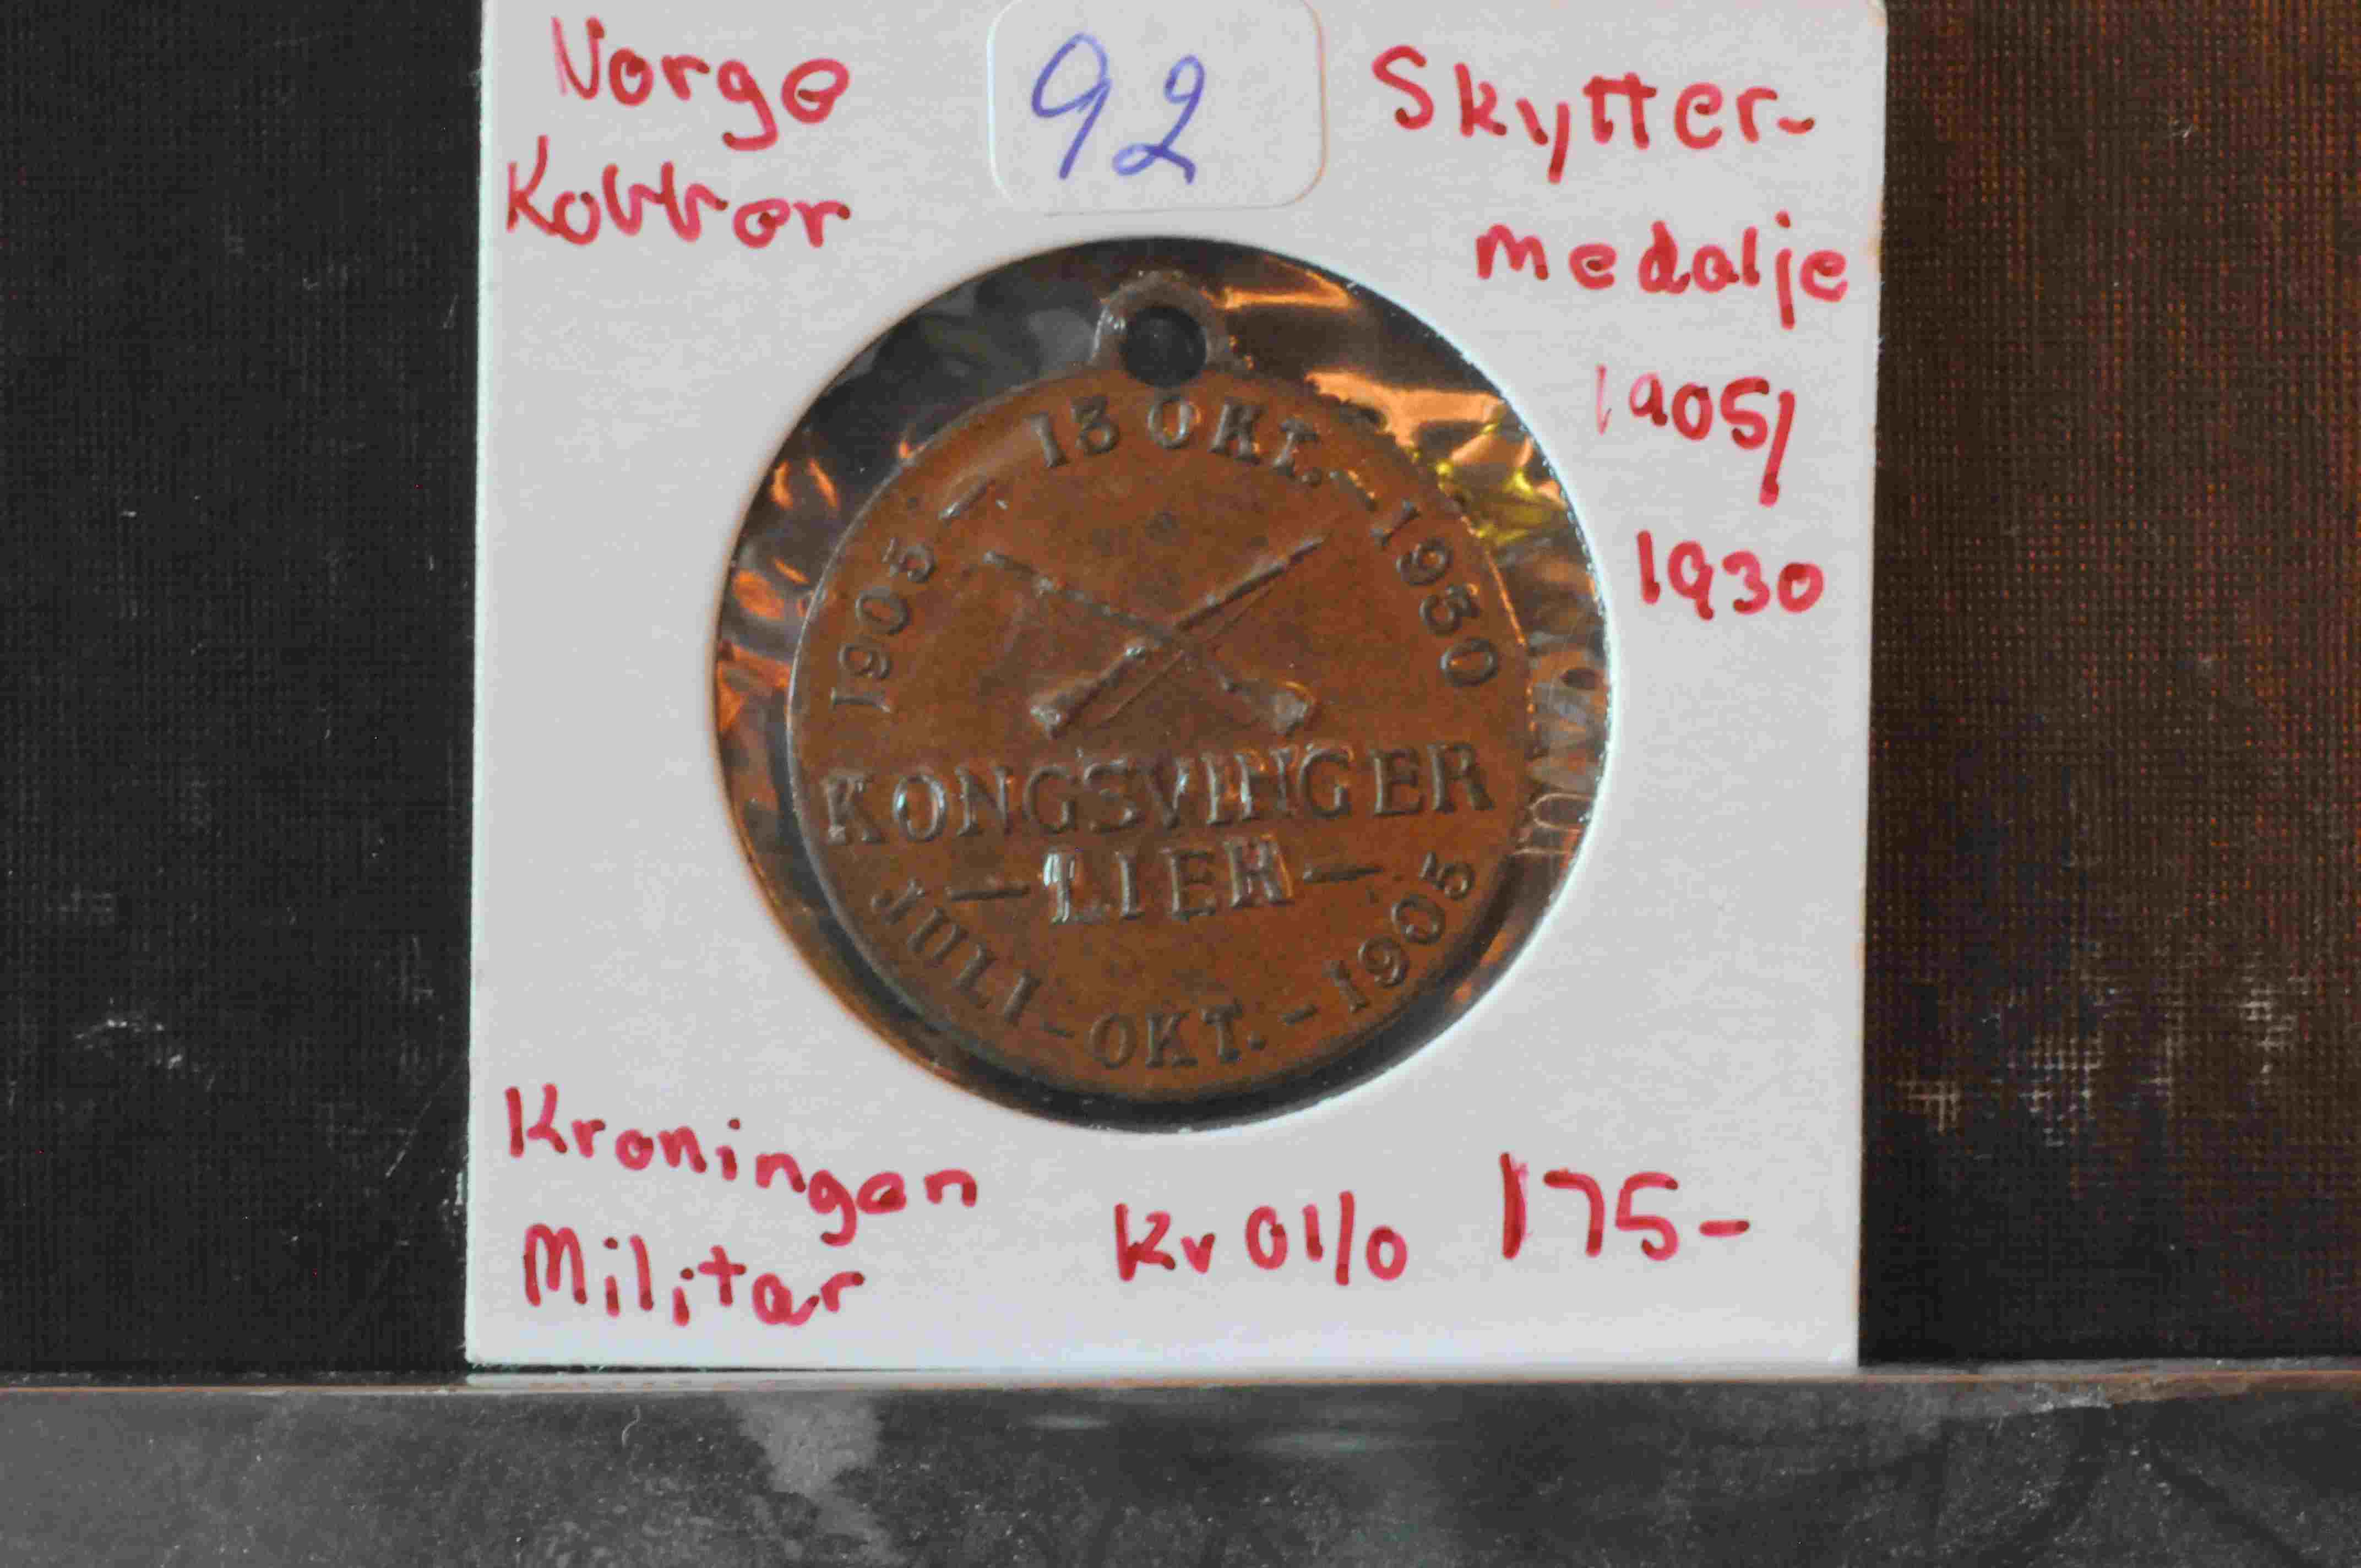 Kobber Skyttermedalje 1905-1930 Kroningen/Militær kv01/0